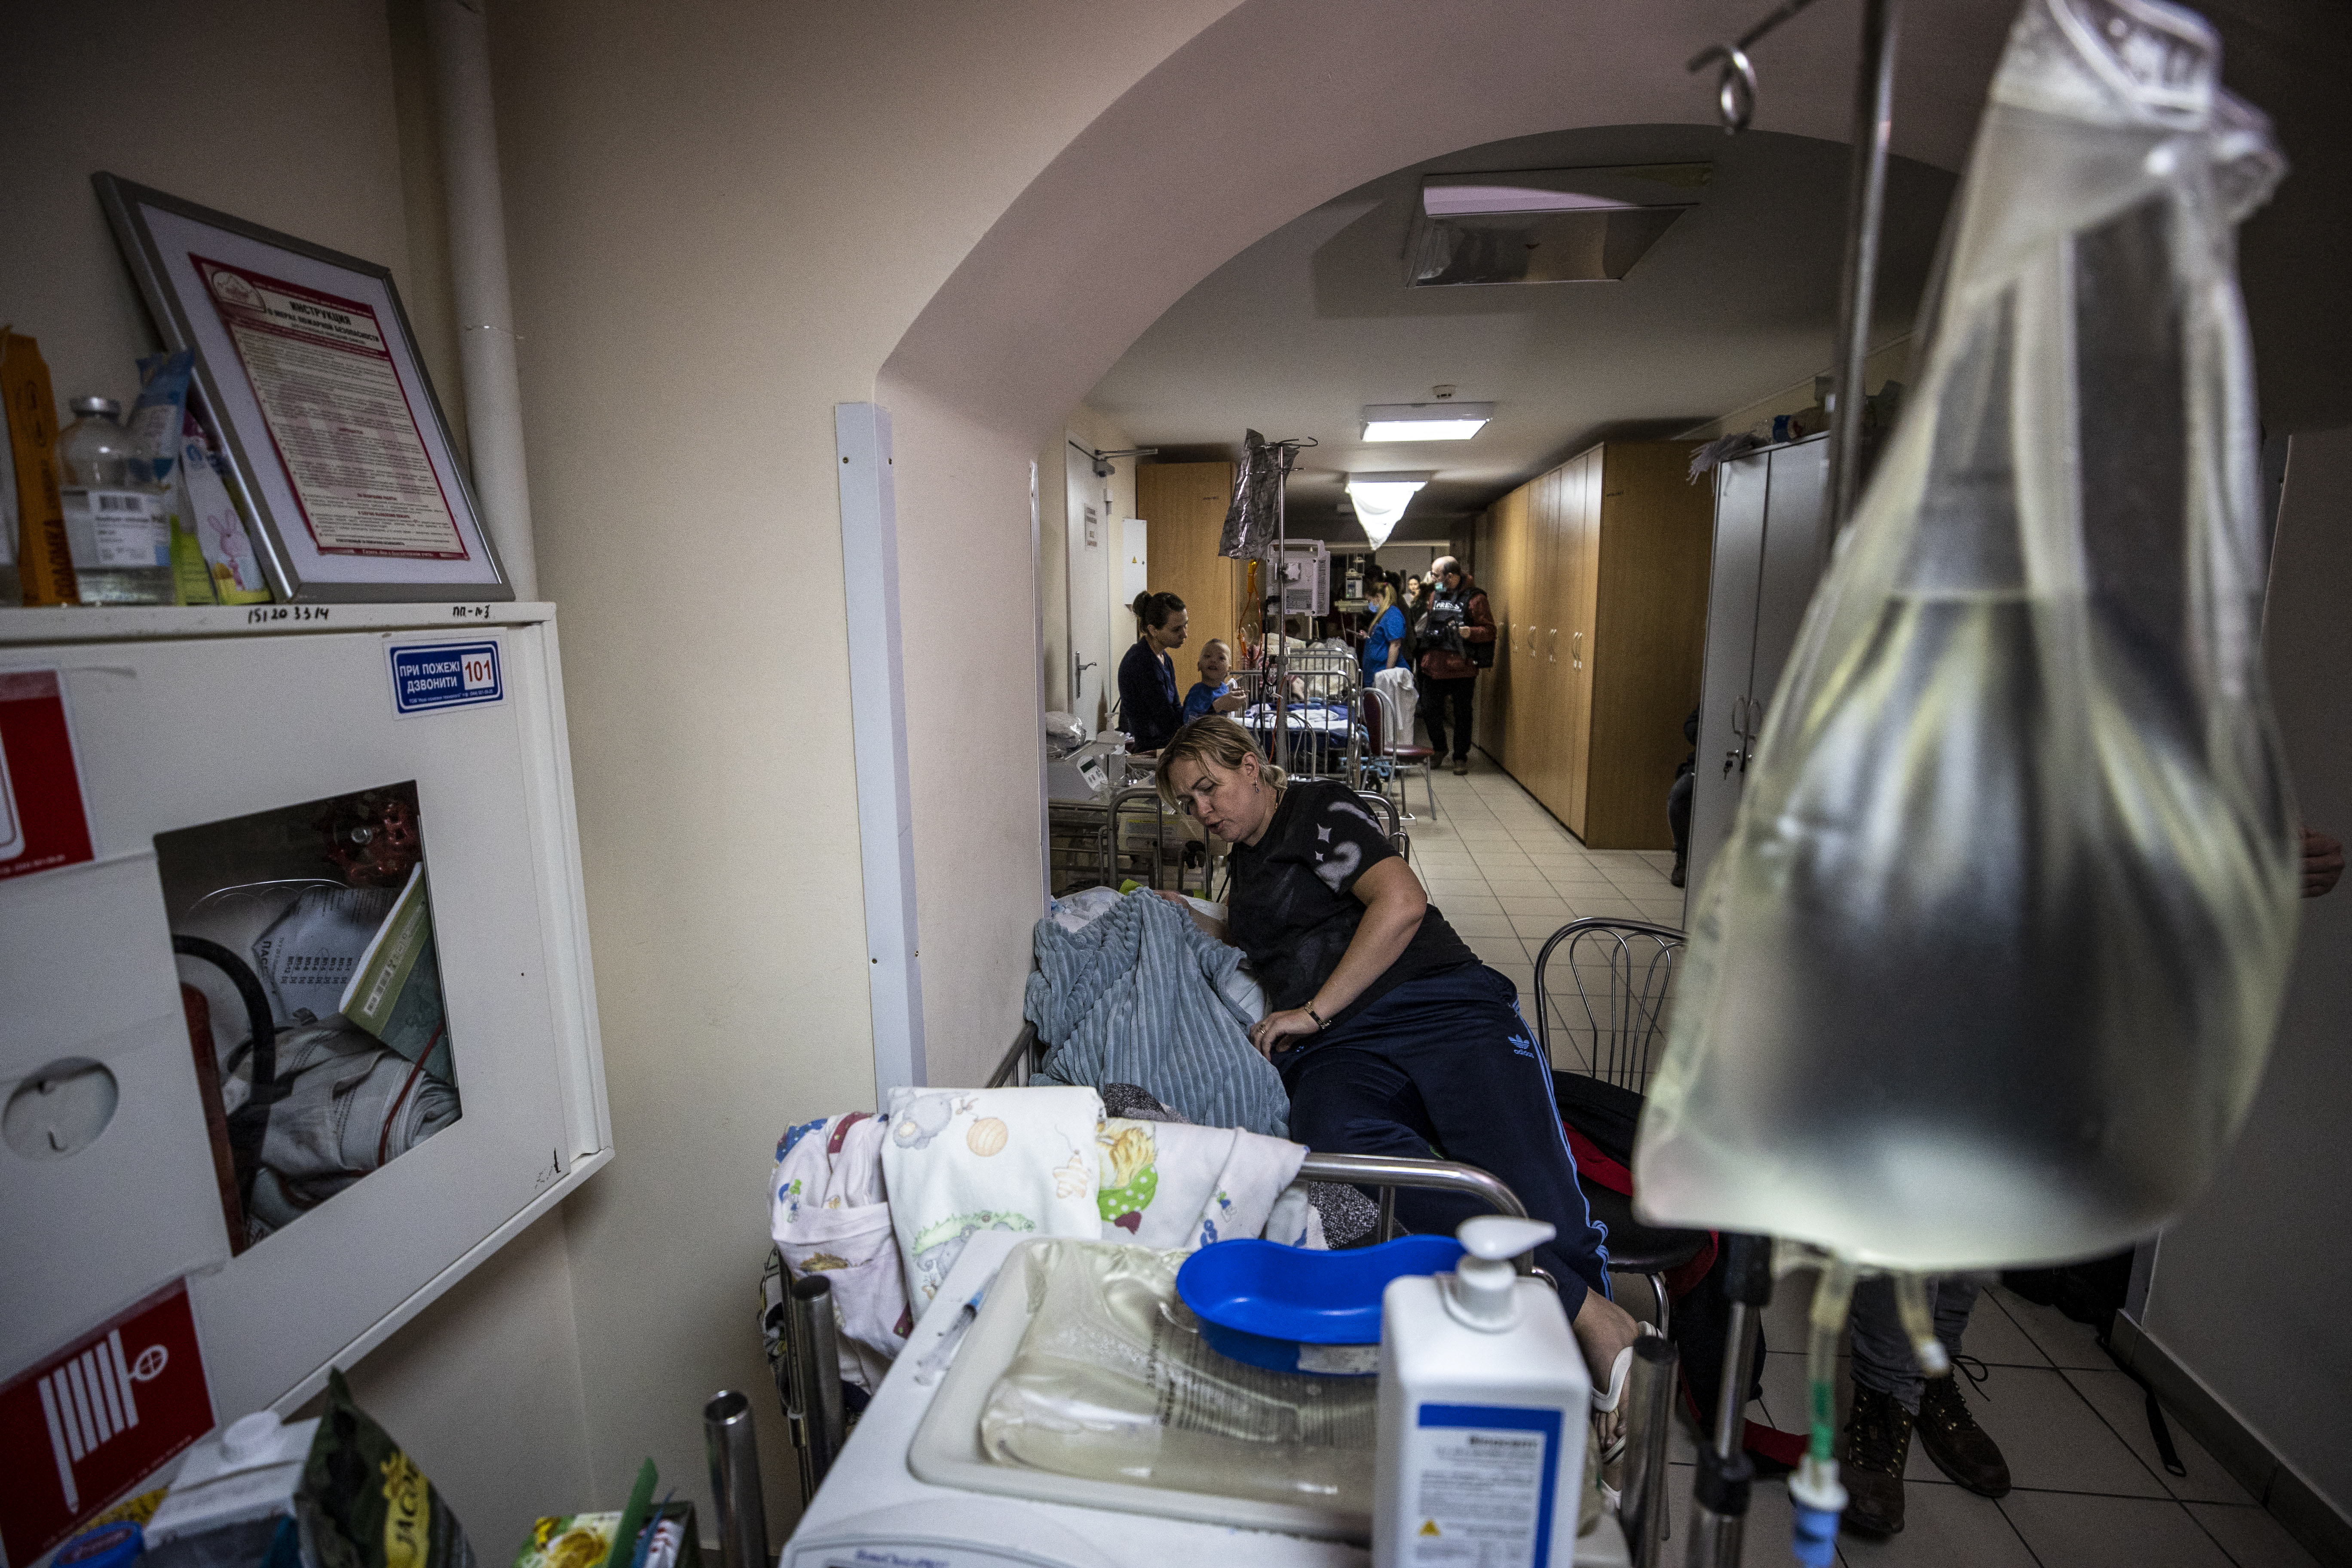 Az ostrom alatt álló Kijev egyik gyerekkórházában az alagsorba szállították át a rákos megbetegedéssel diagnosztizált, kezelés alatt álló gyerekeket 2022. február 28-án.